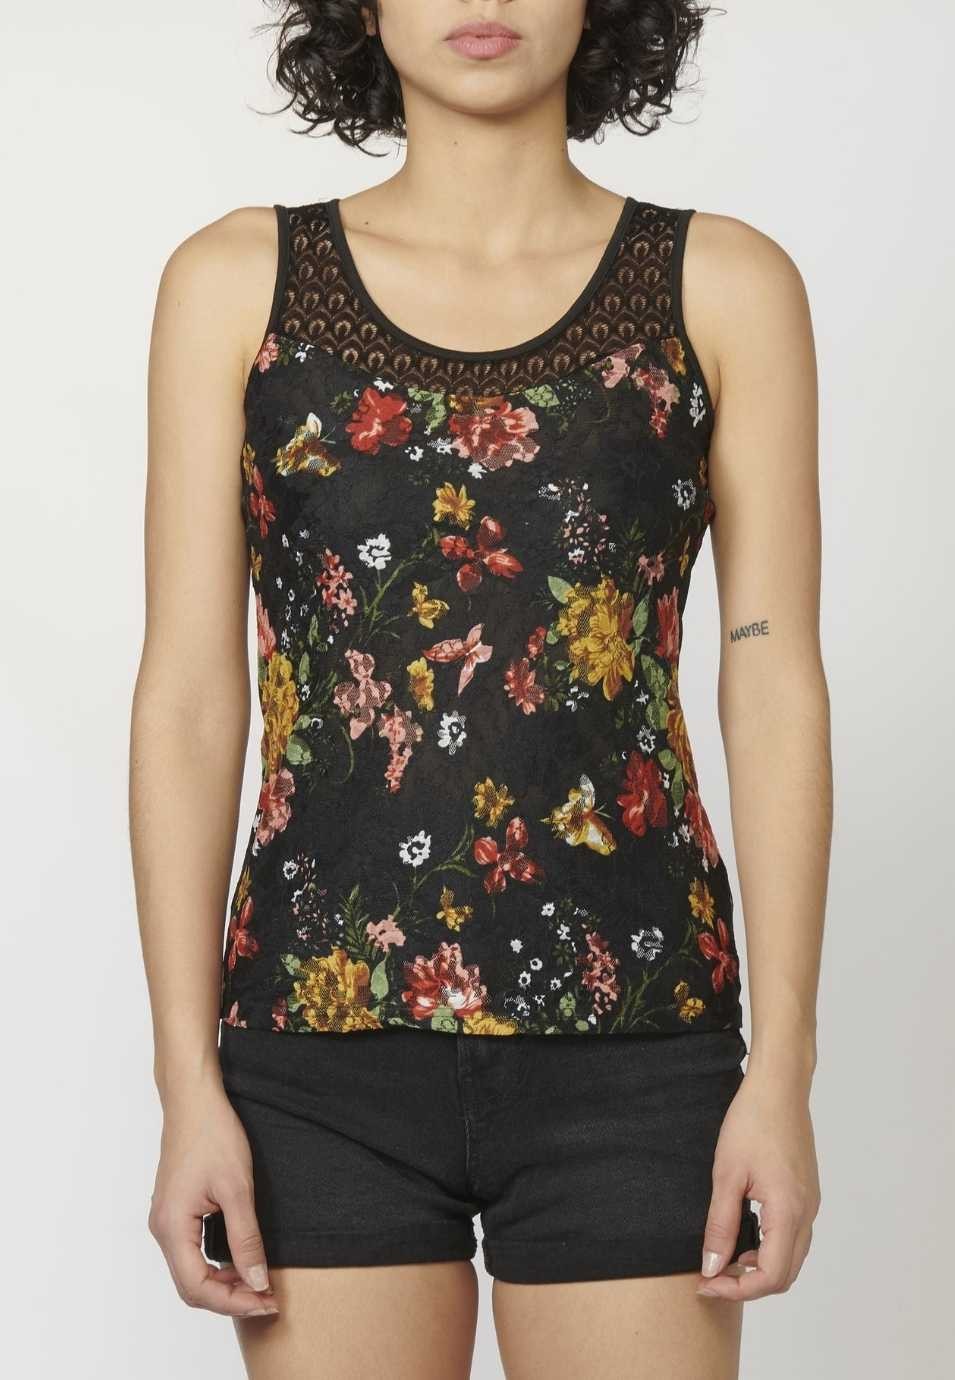 Camiseta Top tirantes con Escote Redondo y Estampado Floral para Mujer 2